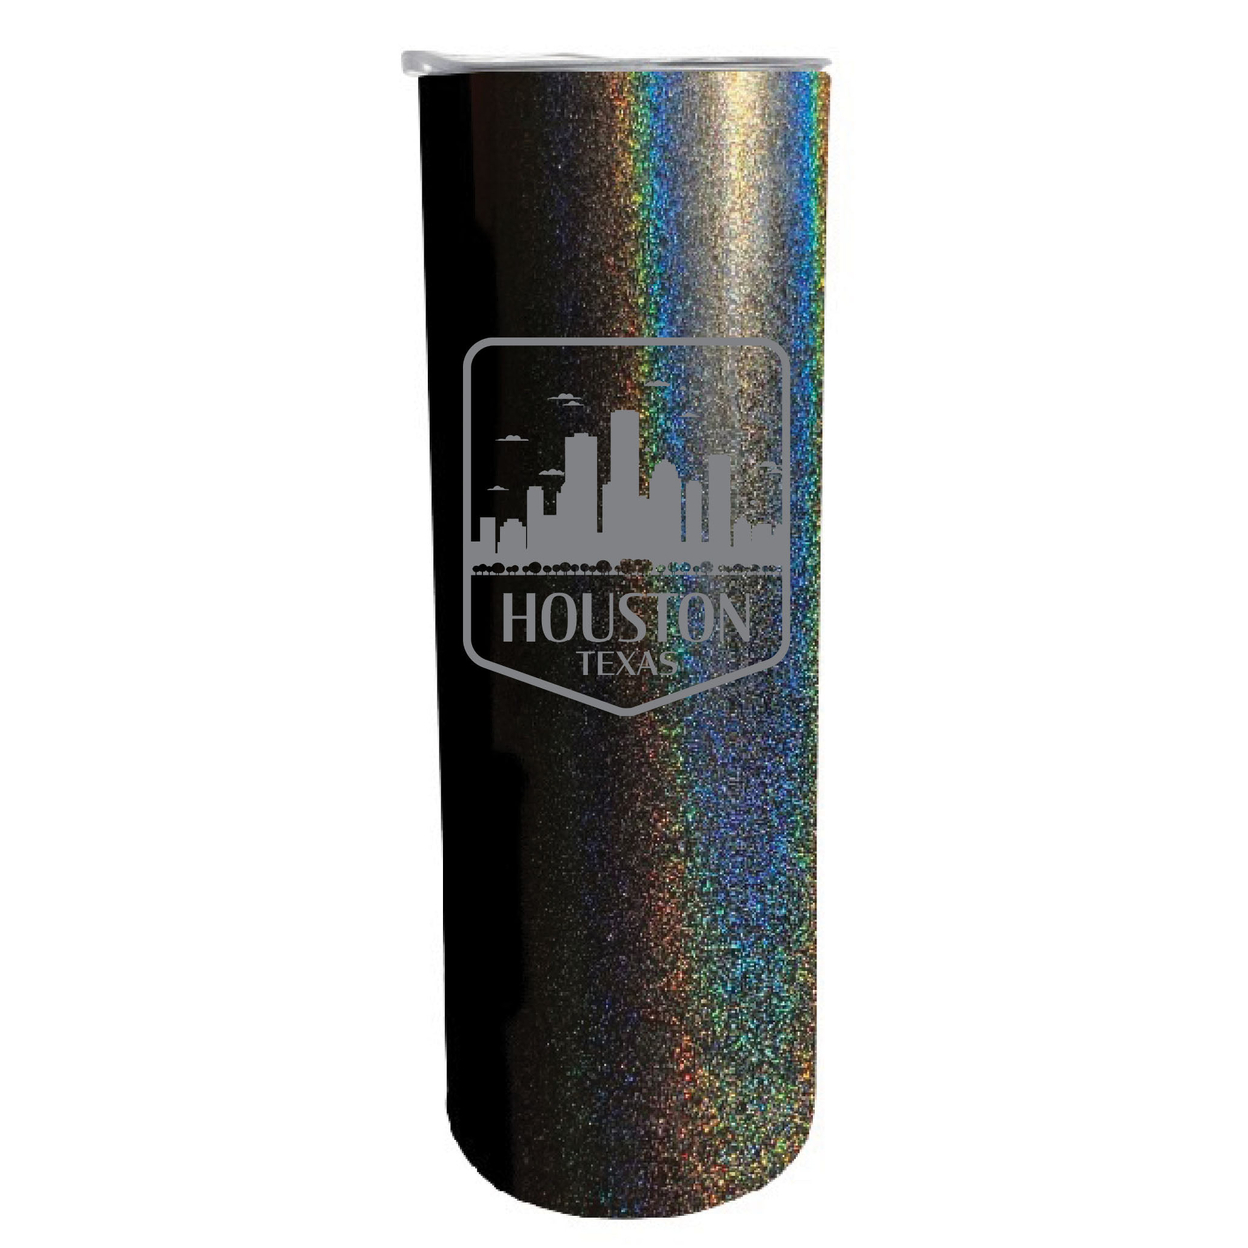 Houston Texas Souvenir 20 Oz Engraved Insulated Stainless Steel Skinny Tumbler - Black Glitter,,4-Pack